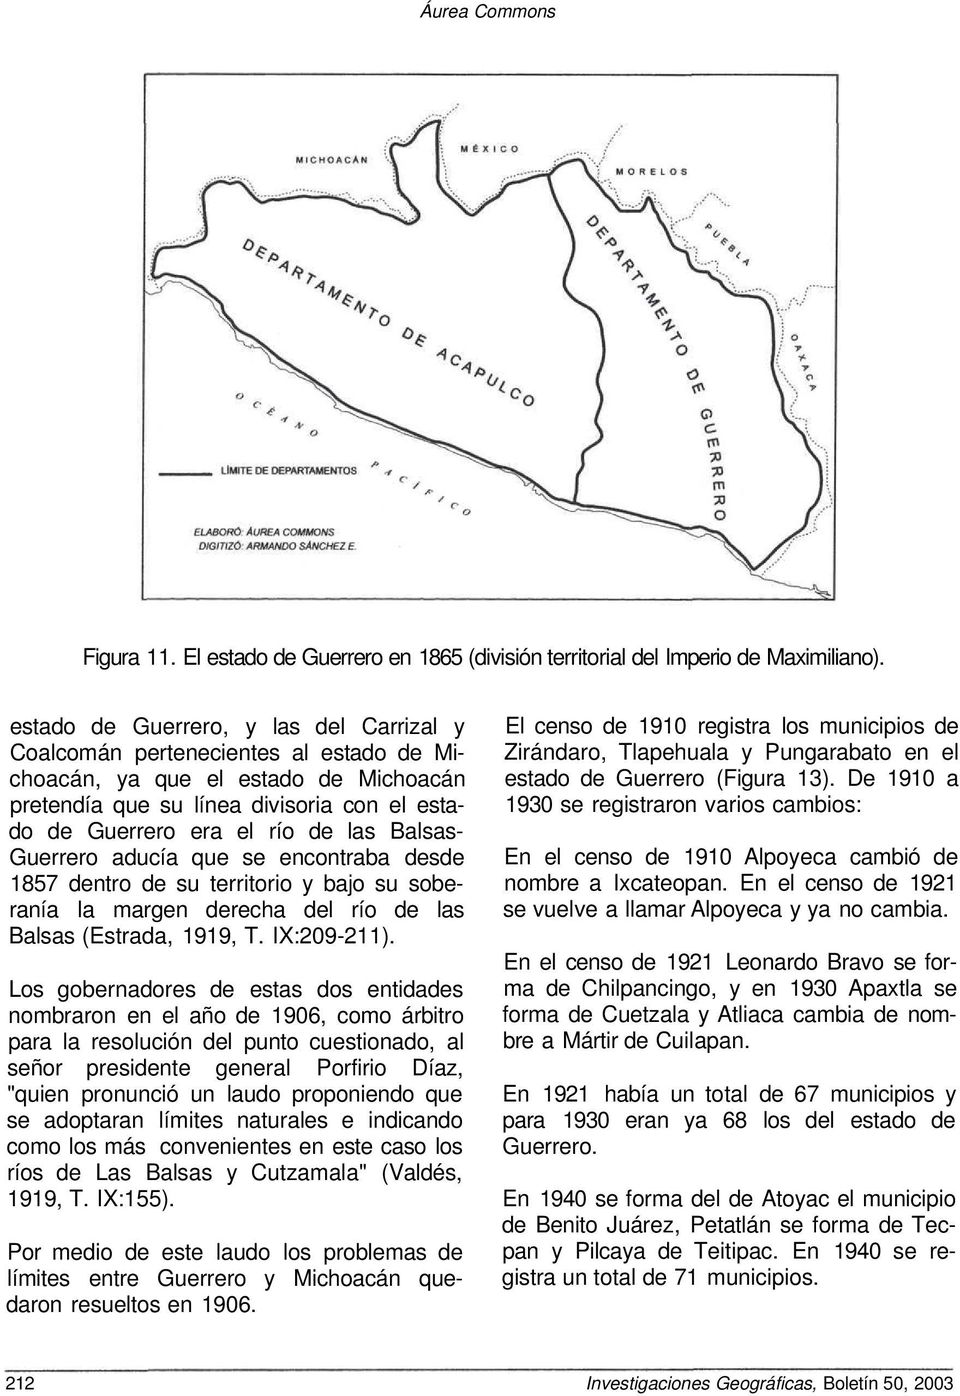 Balsas- Guerrero aducía que se encontraba desde 1857 dentro de su territorio y bajo su soberanía la margen derecha del río de las Balsas (Estrada, 1919, T. IX:209-211).